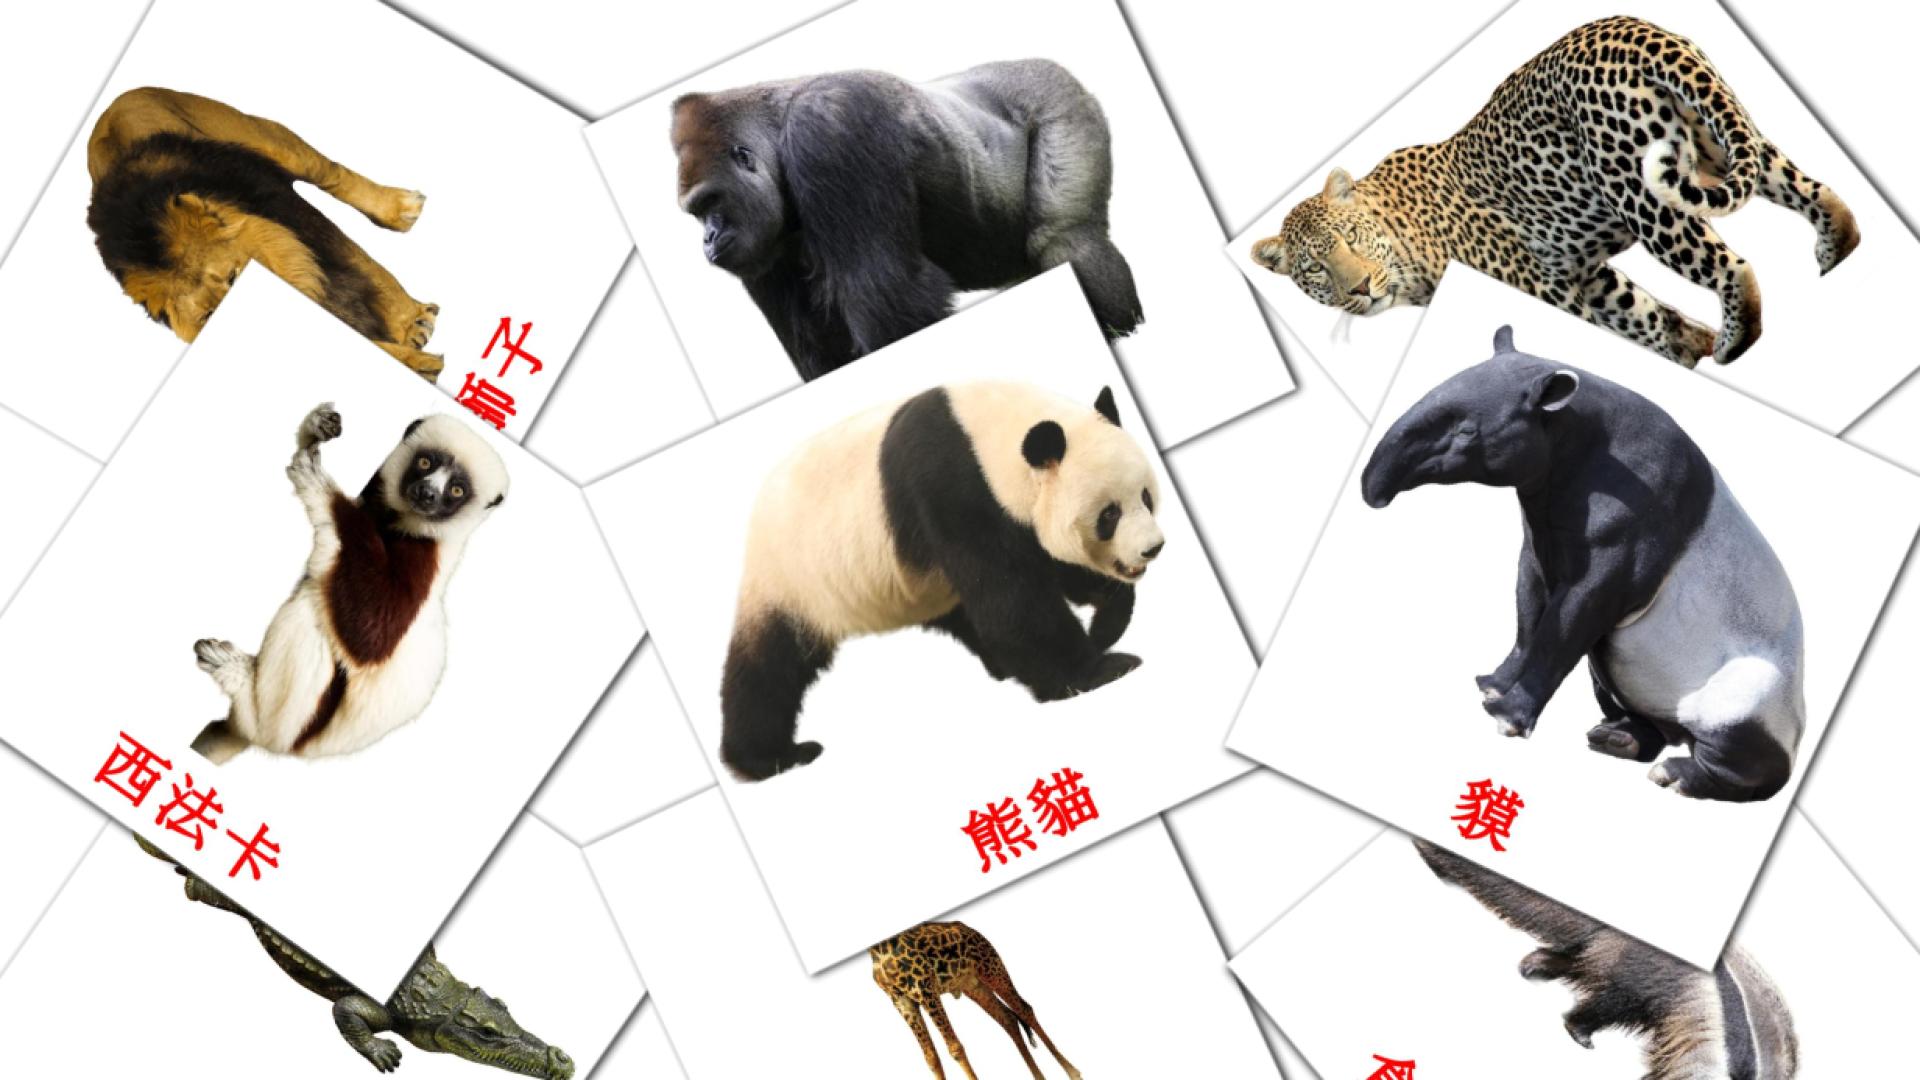 21 叢林動物 flashcards